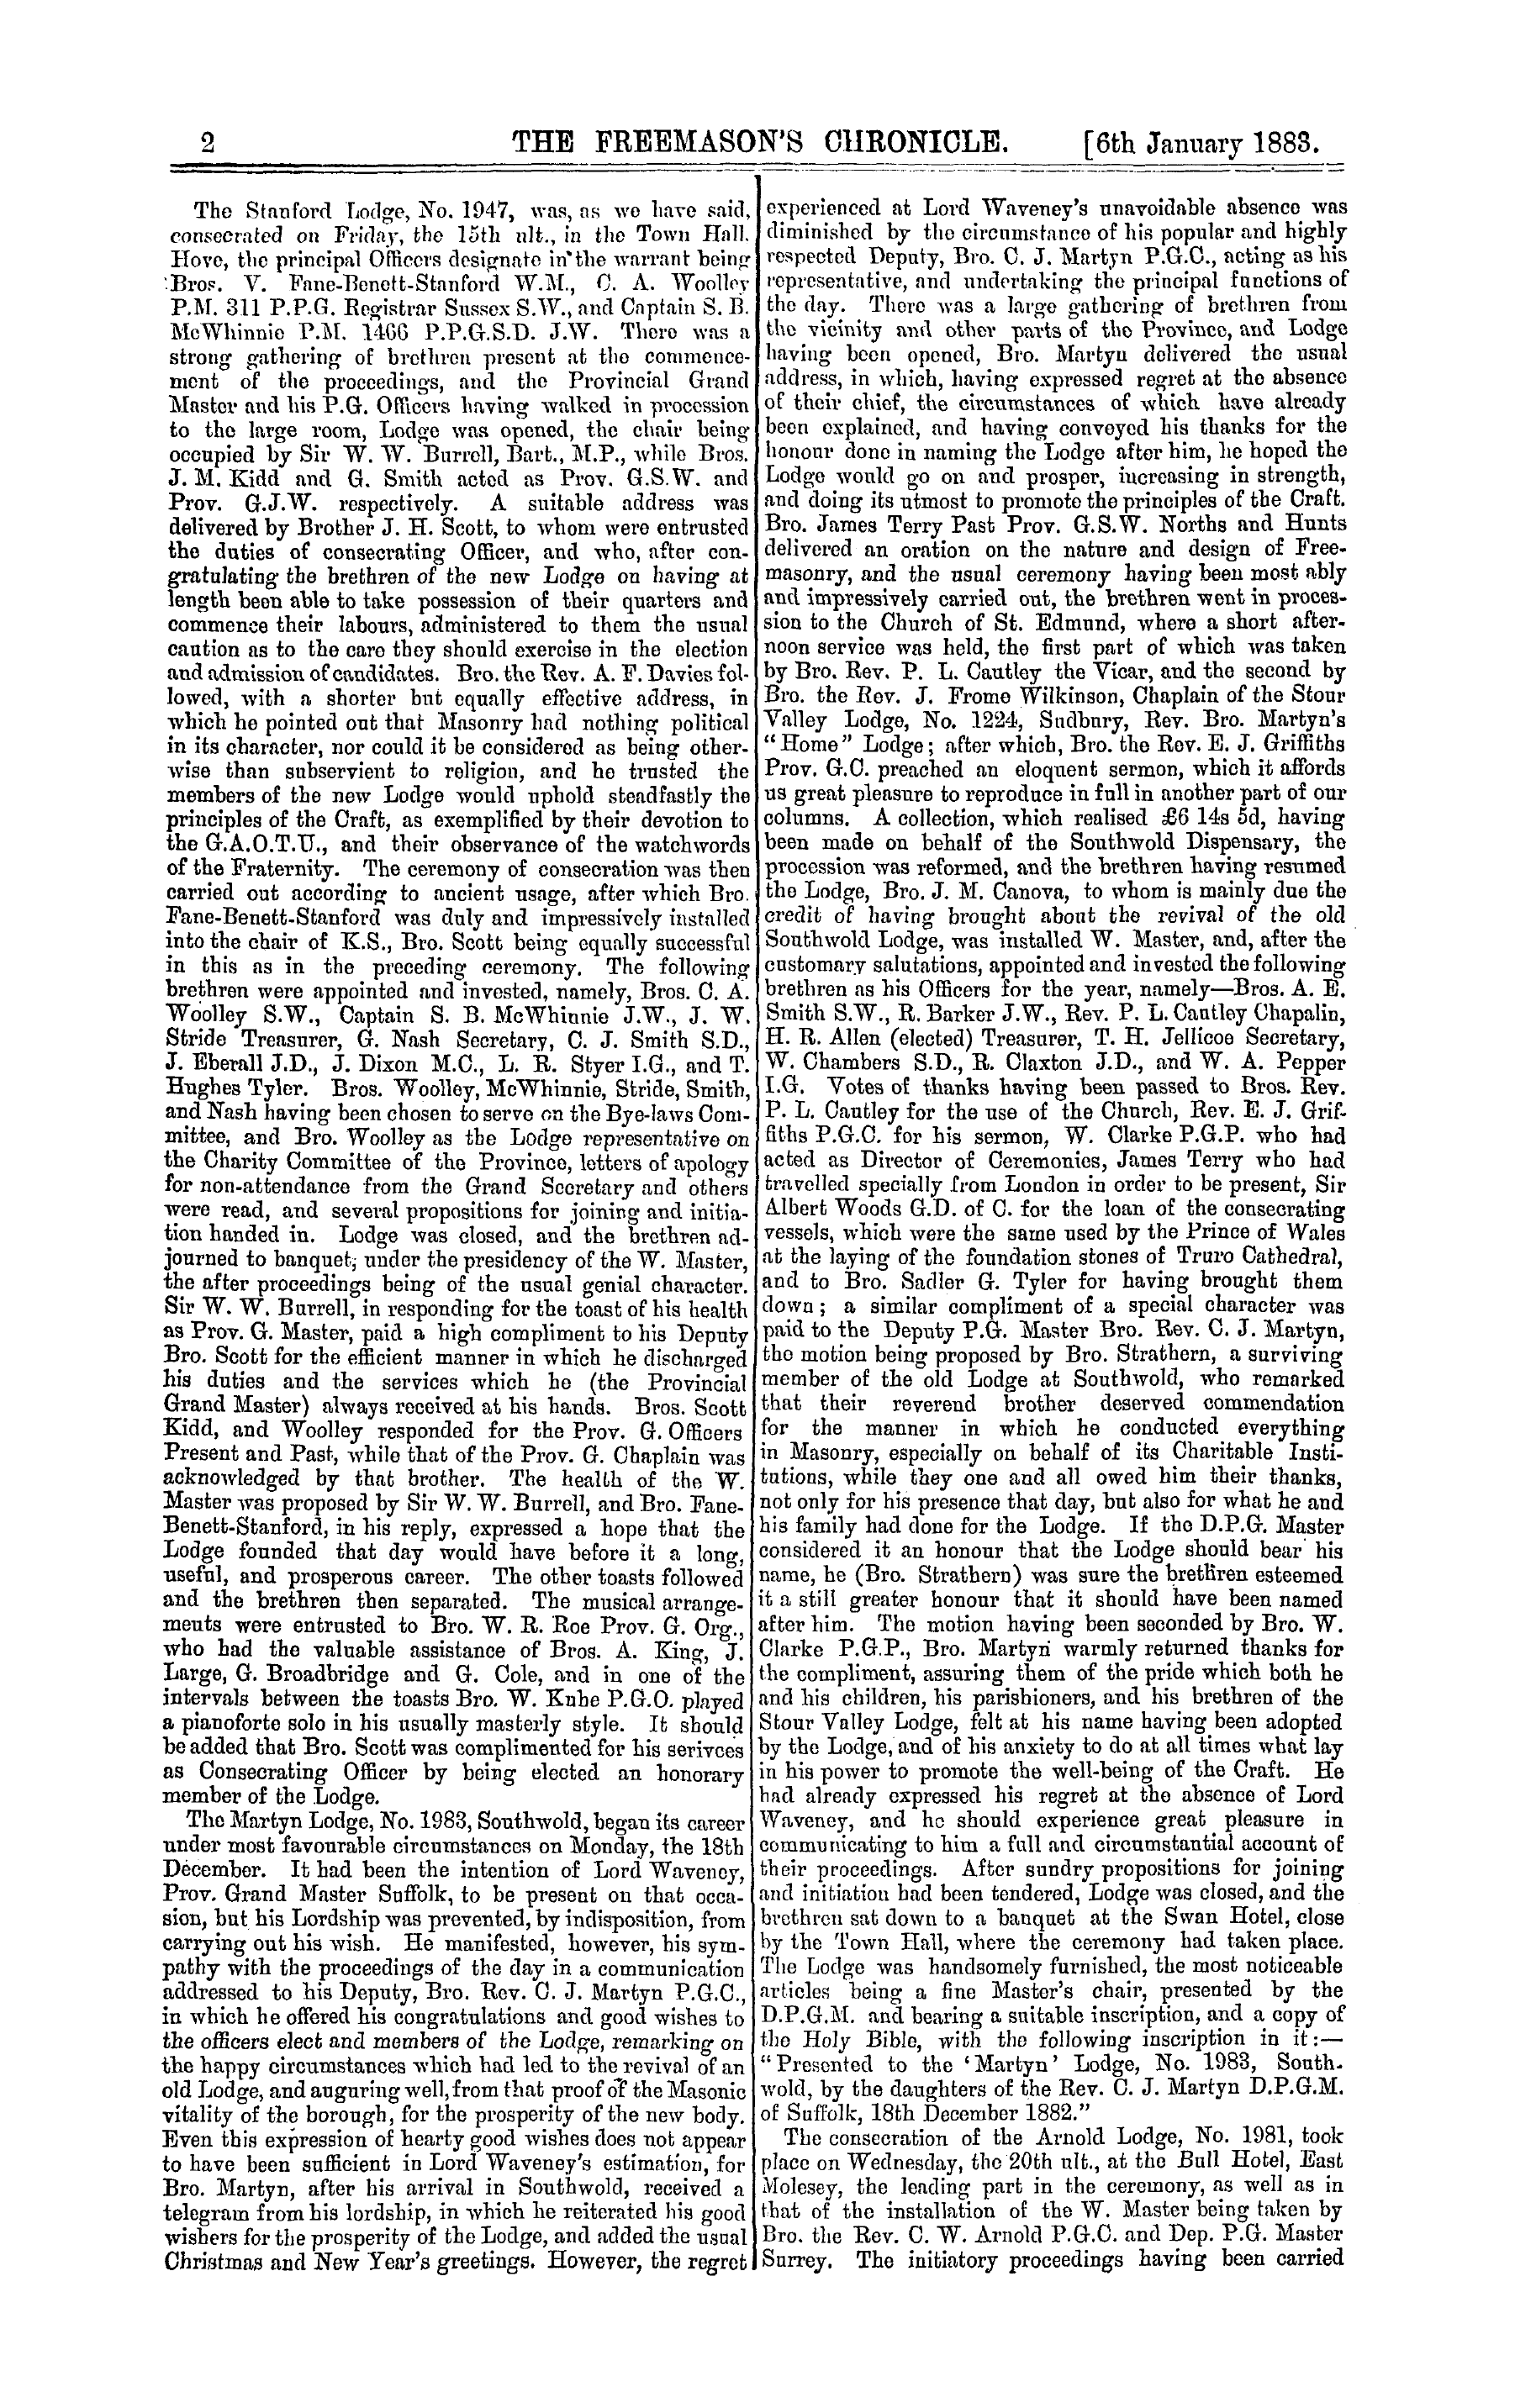 The Freemason's Chronicle: 1883-01-06 - A Fortnight's Summary.